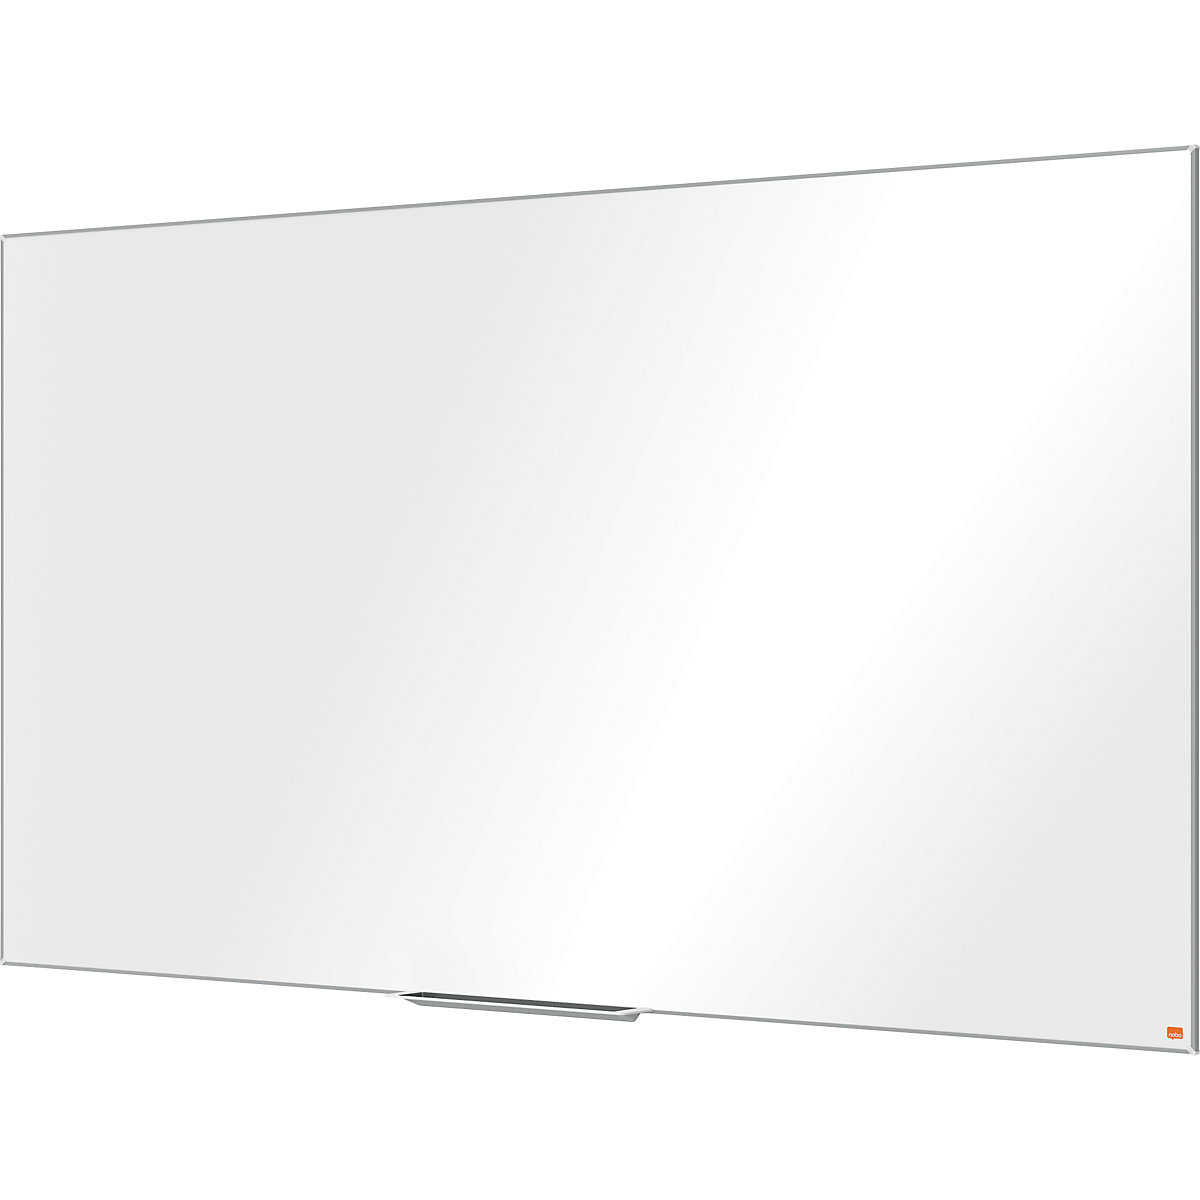 PRO whiteboard – nobo, widescreen format, enamelled steel, 85'', WxH 1887 x 1064 mm-6